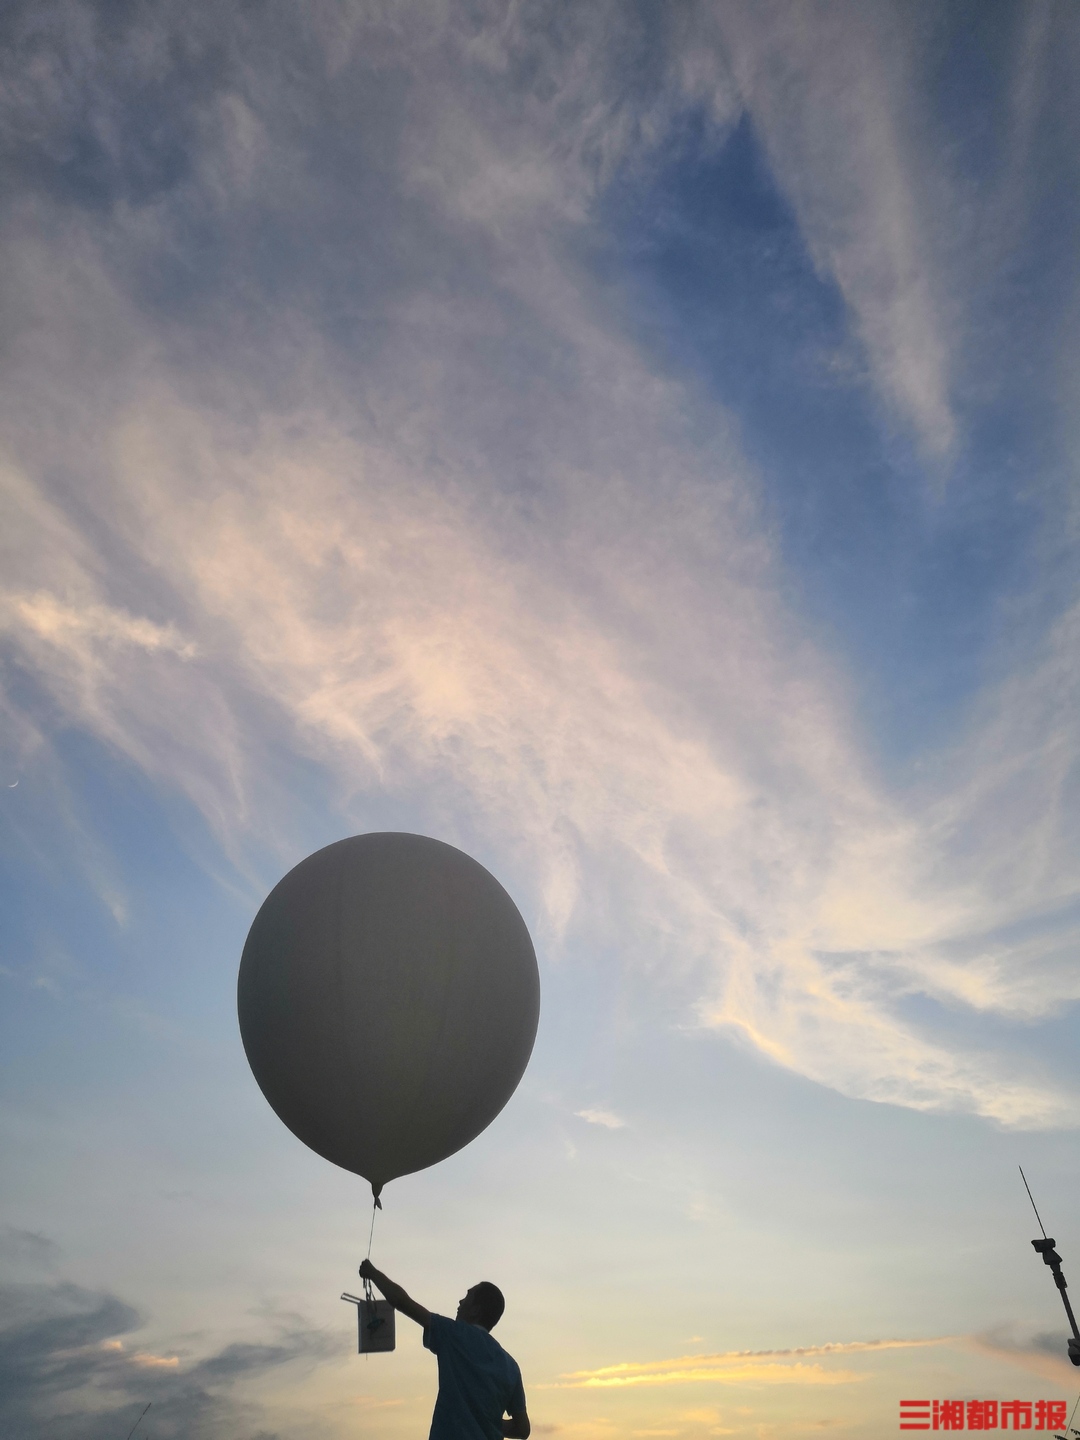 大气球万米高空“把脉”天气 - 经济要闻 - 新湖南